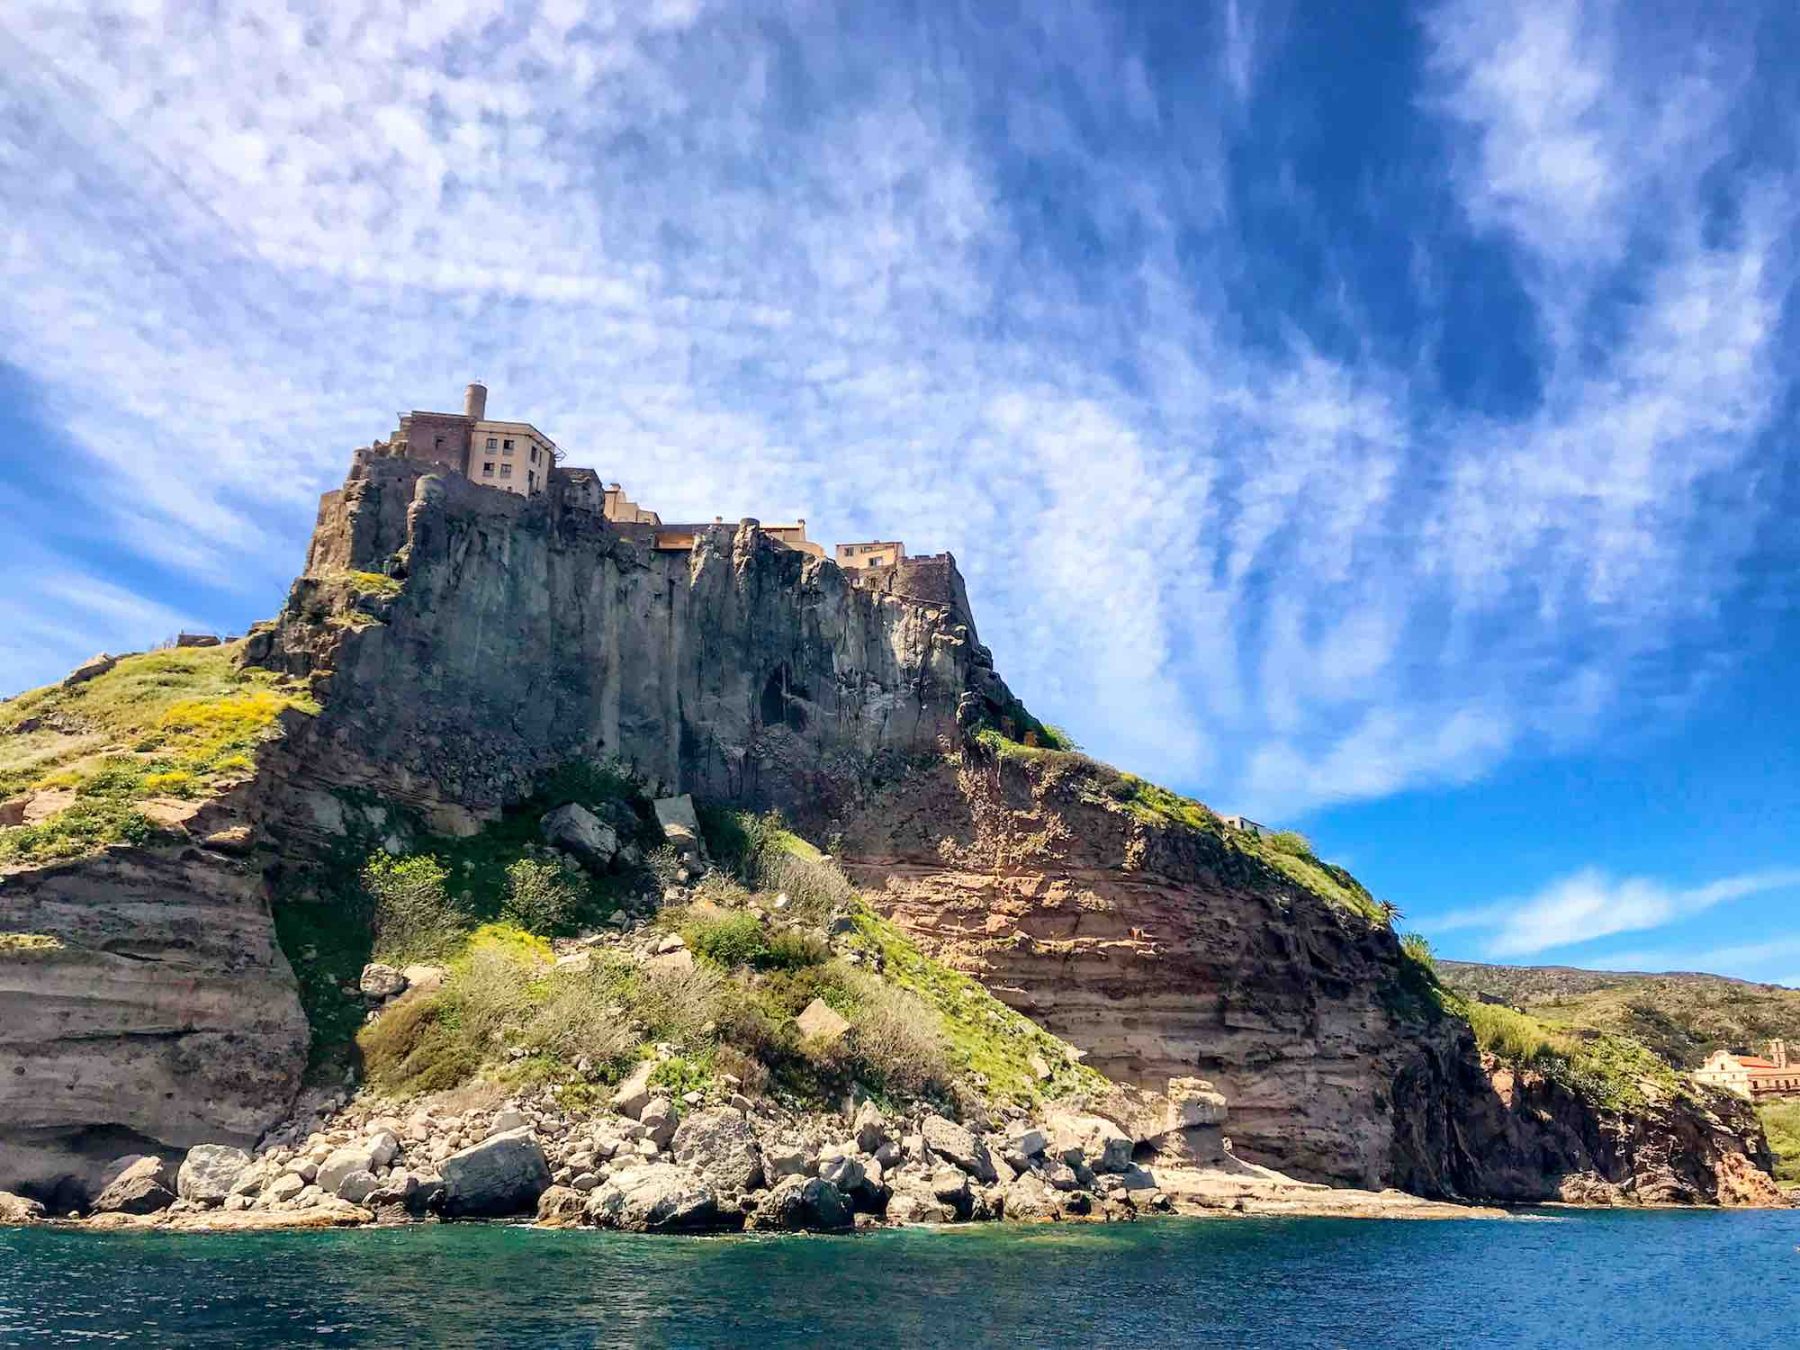 Castello sull'isola di Capraia nell'Arcipelago toscano